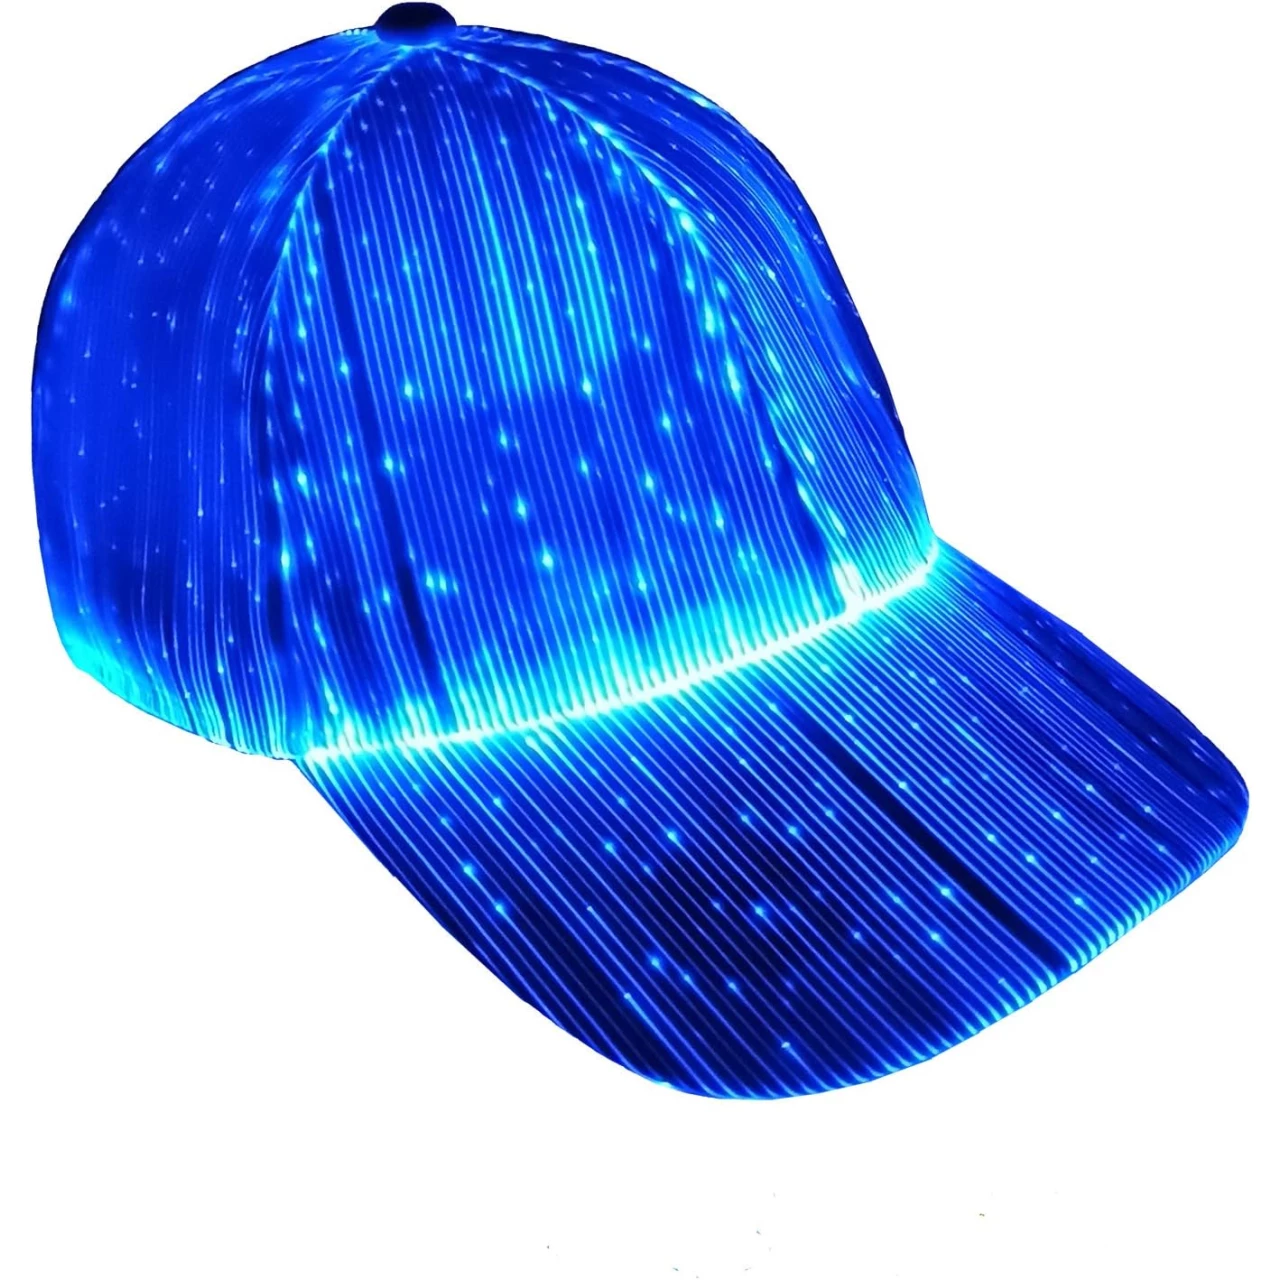 Ruconla Fiber Optic Cap LED hat with 7 Colors Luminous Glowing EDC Baseball Hats